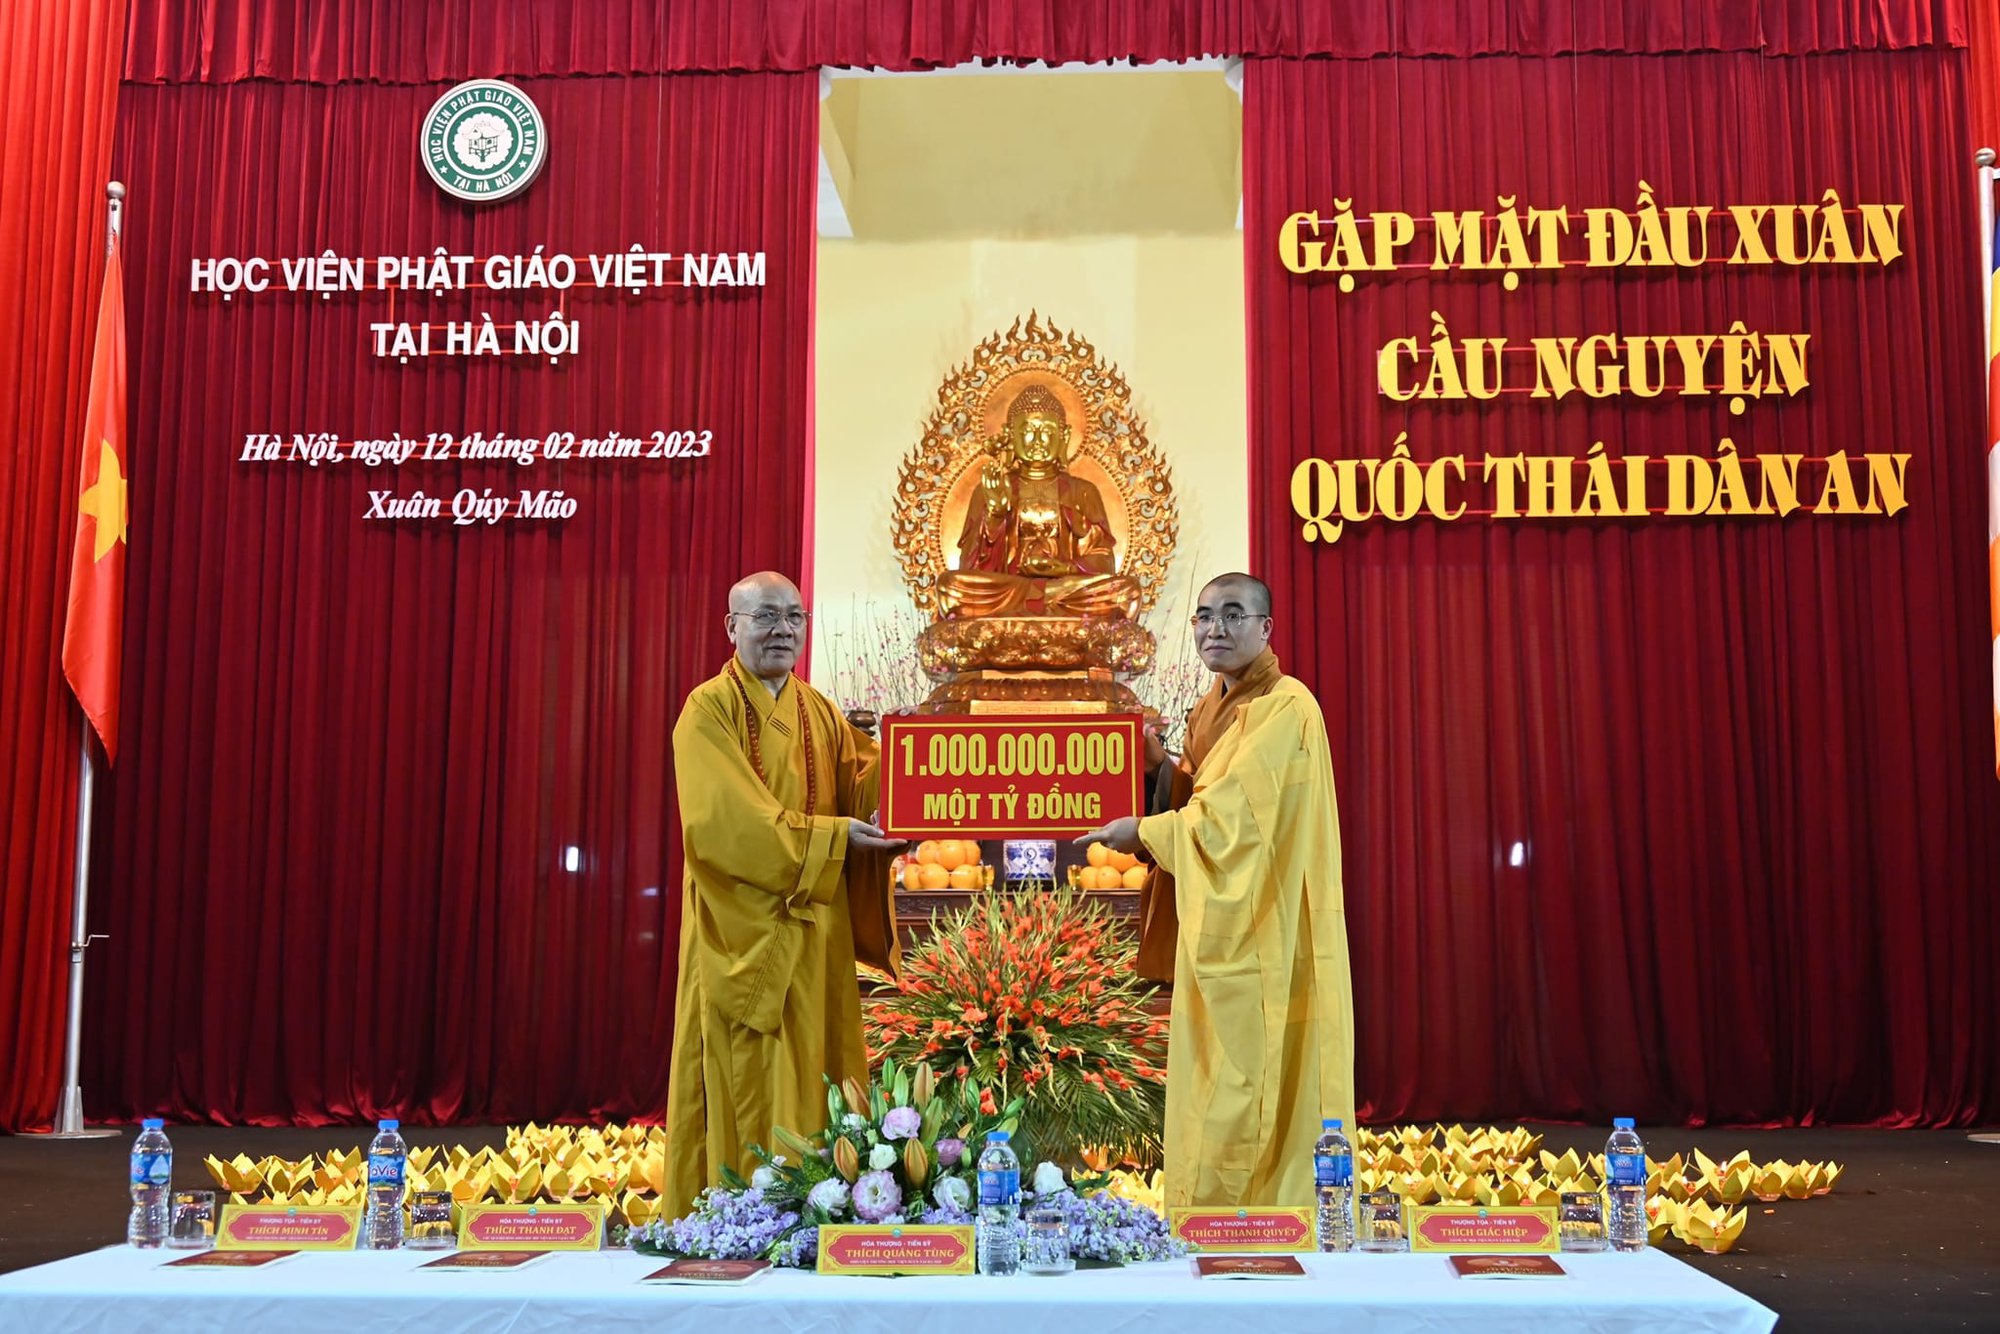 Chùa Ba Vàng cúng dường Học viện Phật giáo Việt Nam 1 tỉ đồng - Ảnh 1.